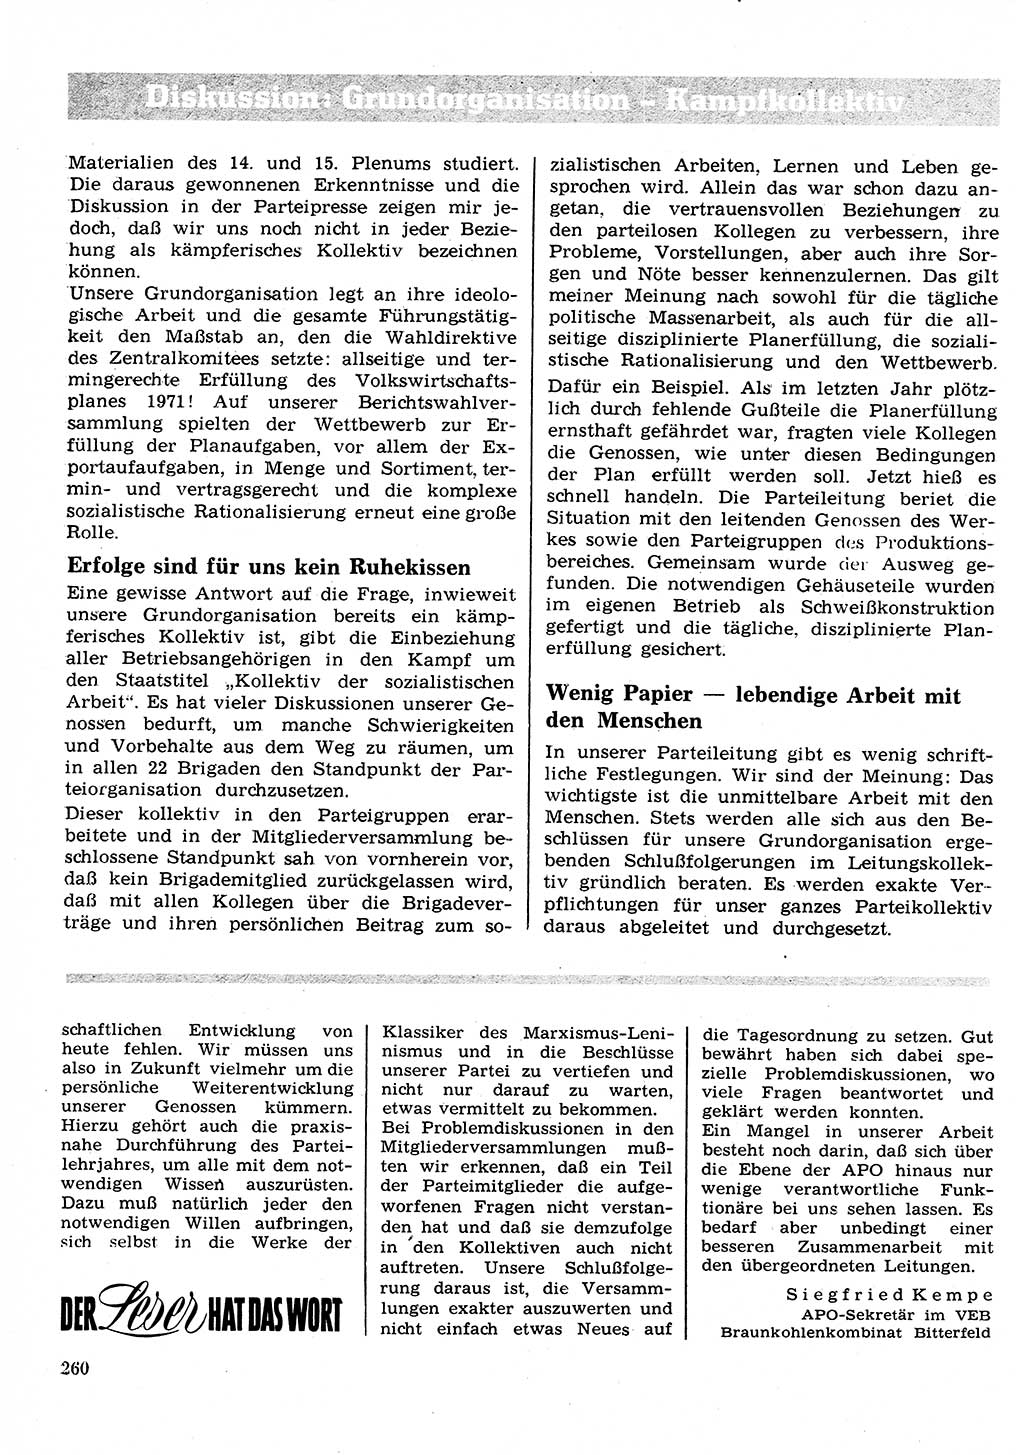 Neuer Weg (NW), Organ des Zentralkomitees (ZK) der SED (Sozialistische Einheitspartei Deutschlands) für Fragen des Parteilebens, 26. Jahrgang [Deutsche Demokratische Republik (DDR)] 1971, Seite 260 (NW ZK SED DDR 1971, S. 260)